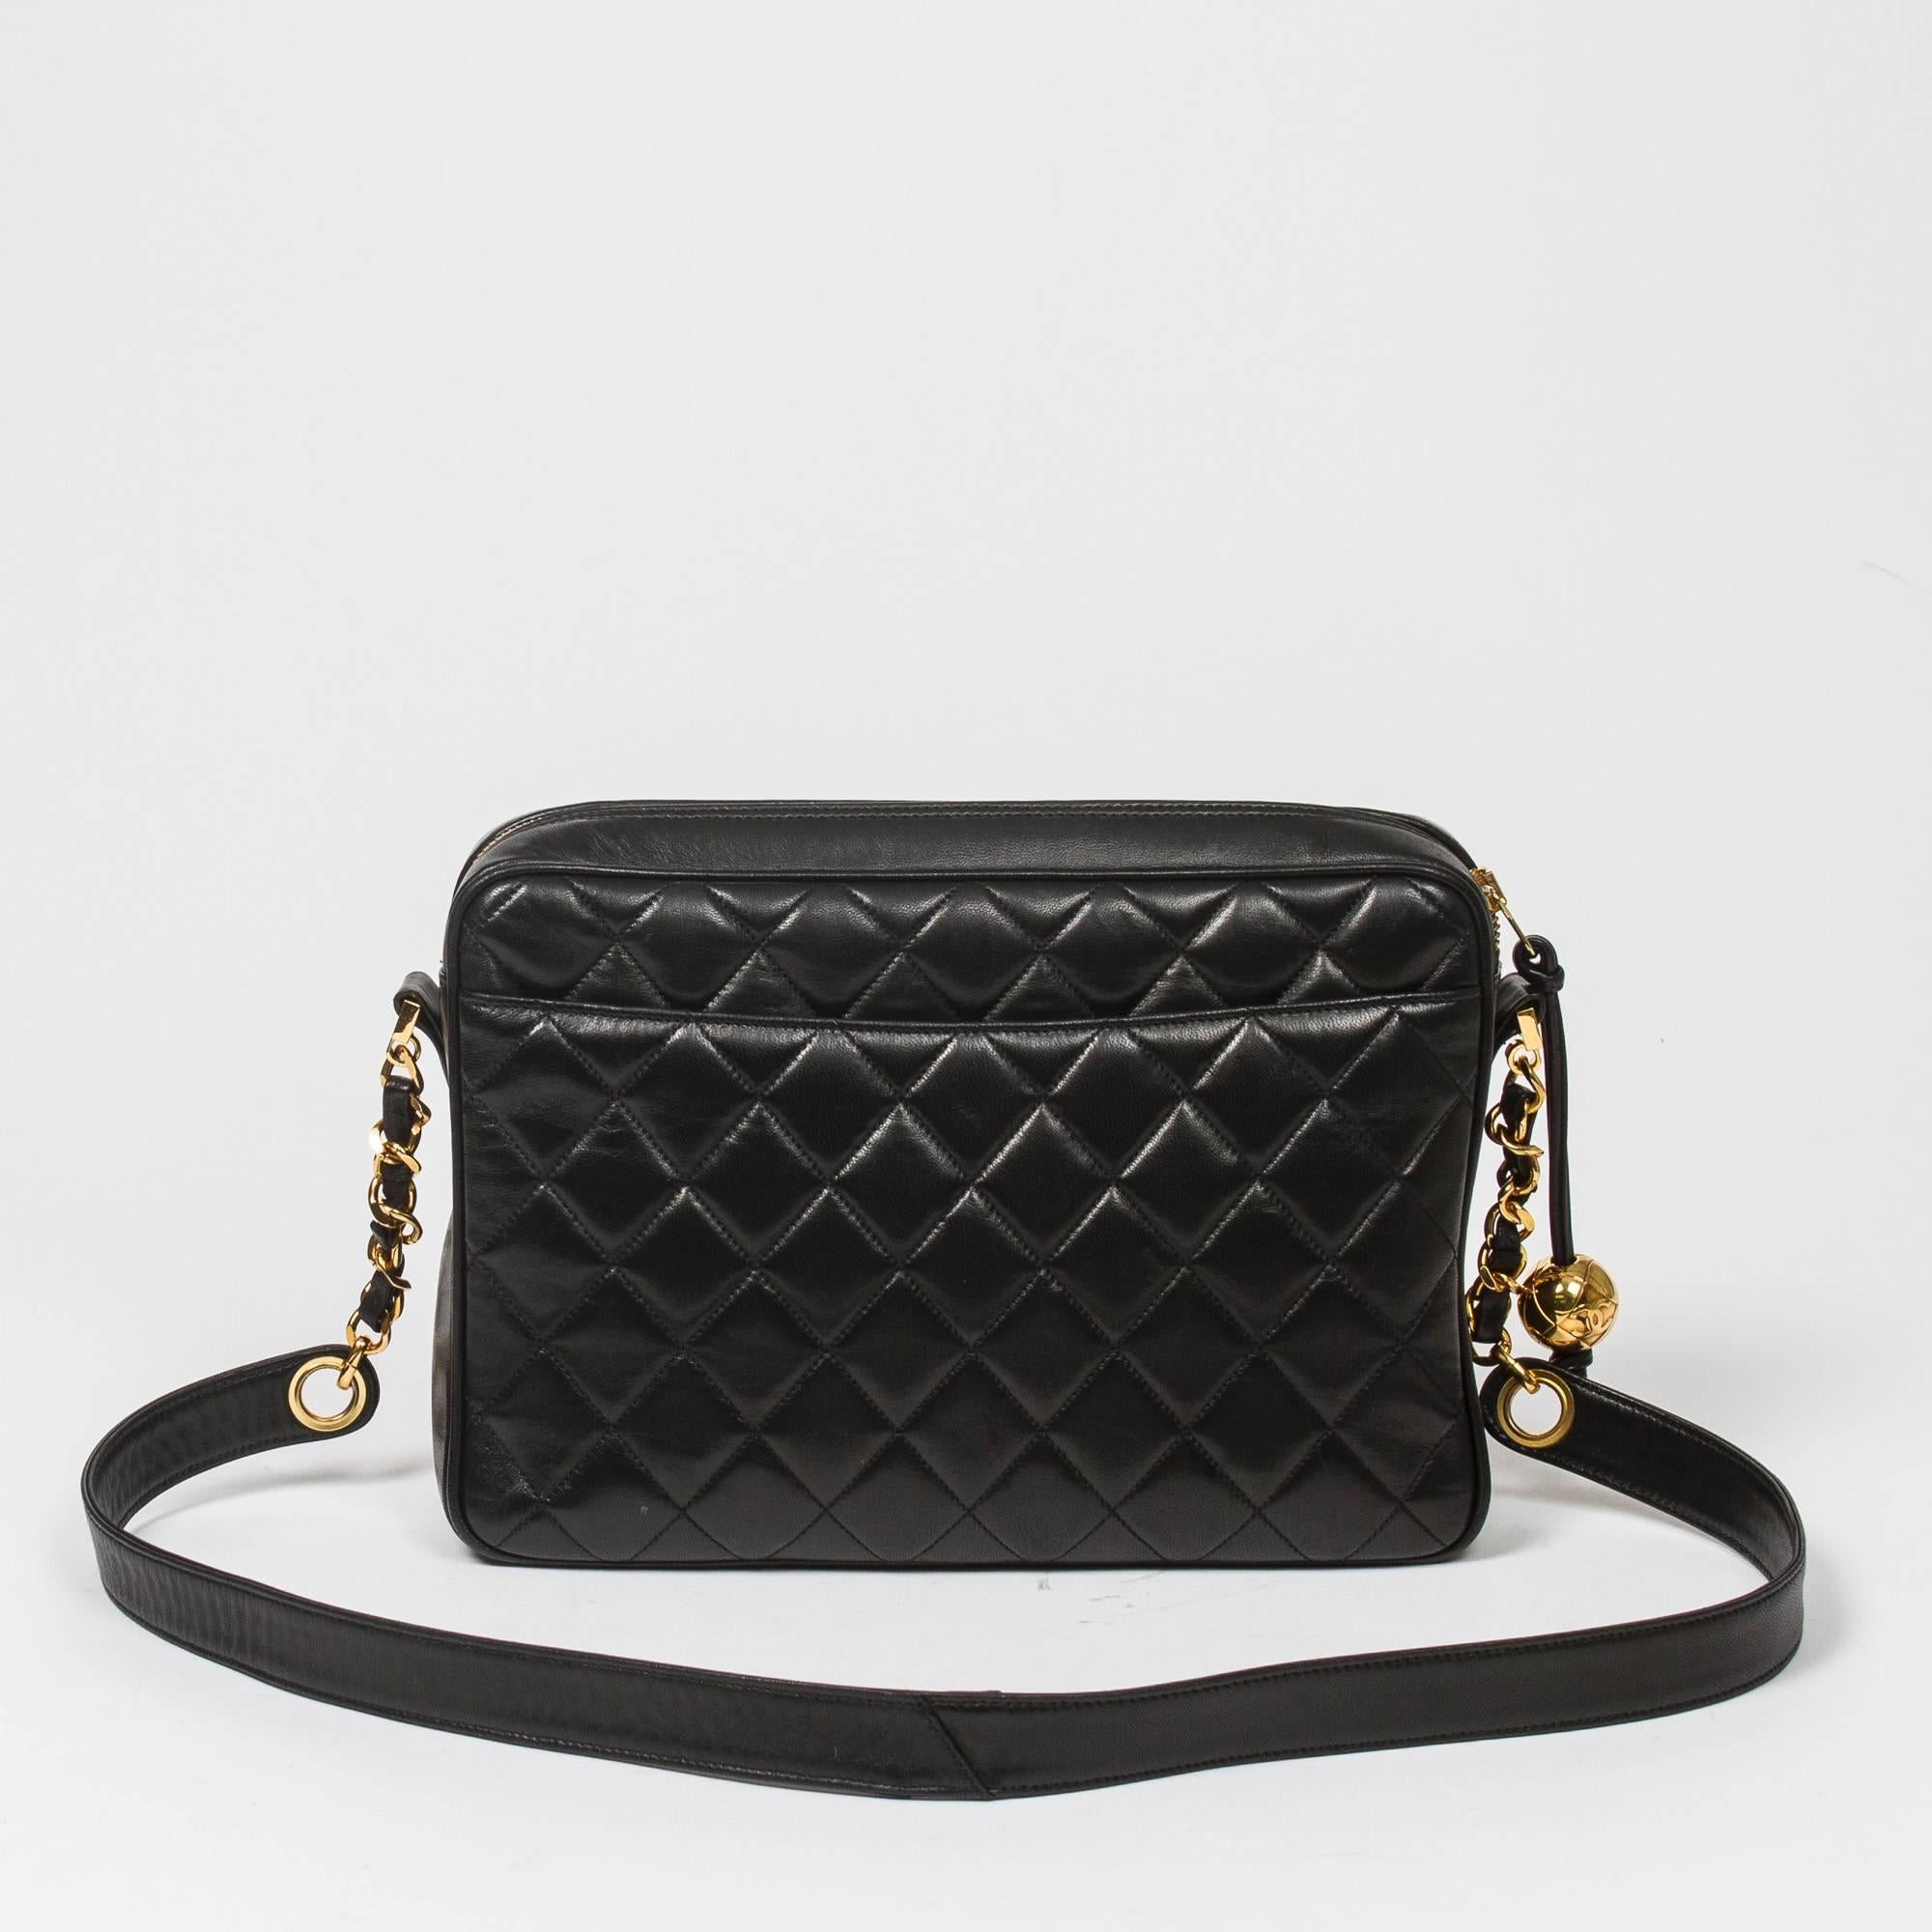 Women's Chanel Vintage shoulder bag in black quilted lambskin